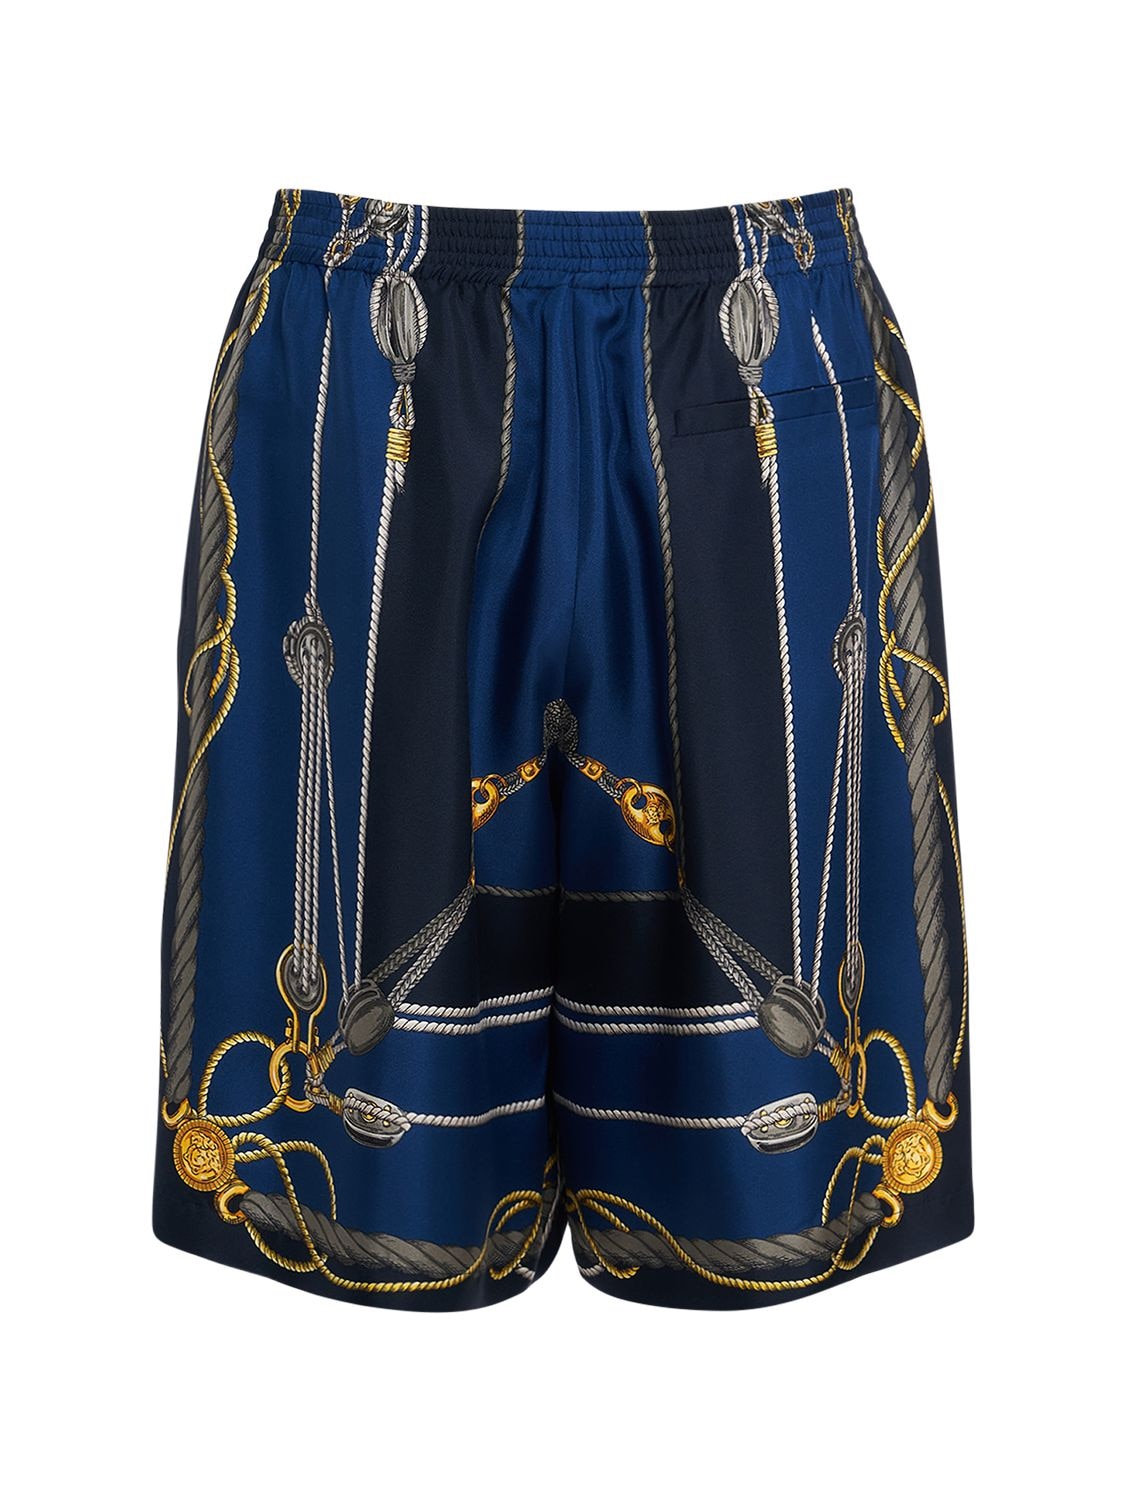 Image of Nautical Printed Silk Shorts